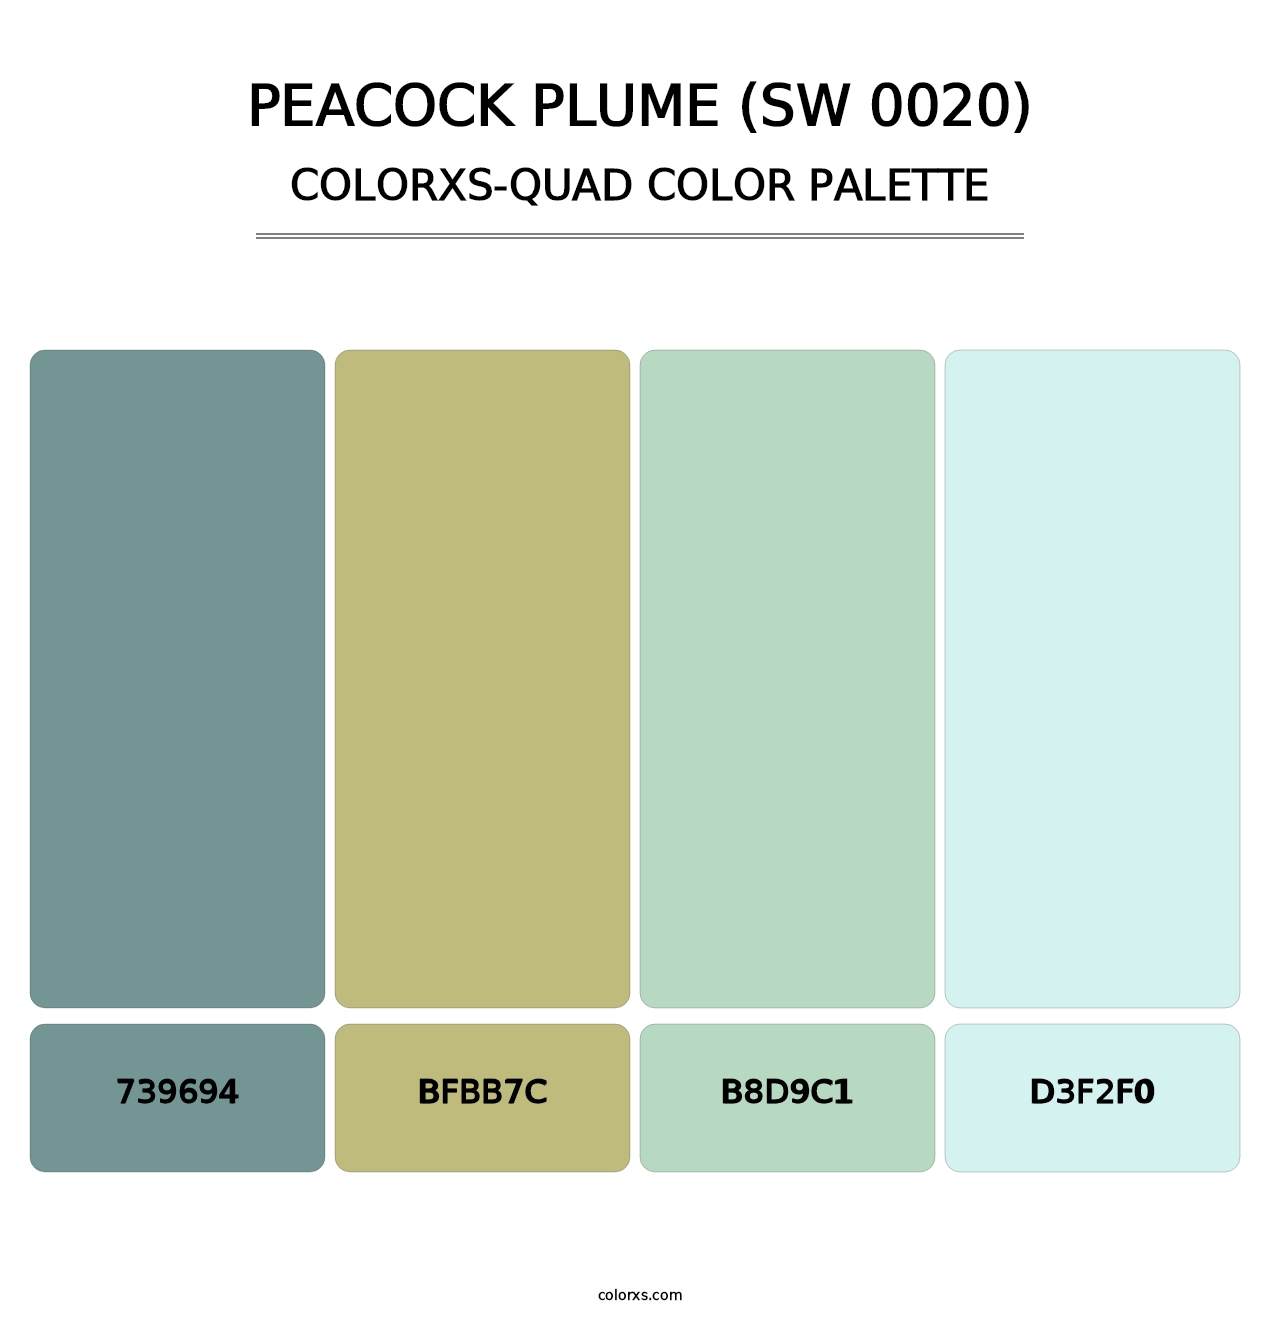 Peacock Plume (SW 0020) - Colorxs Quad Palette